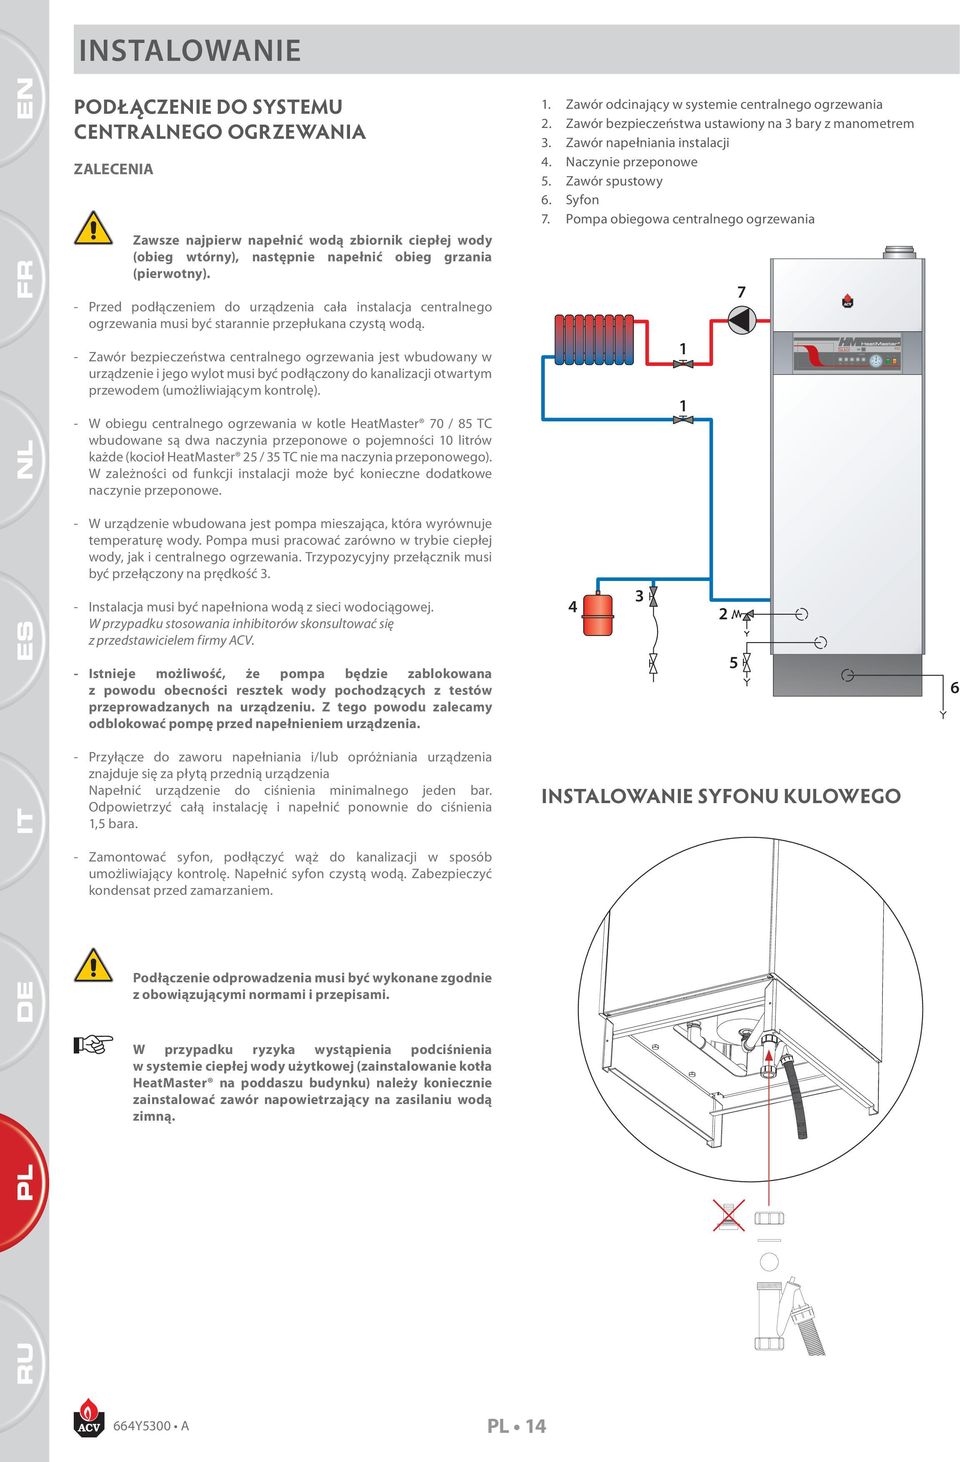 - Zawór bezpieczeństwa centralnego ogrzewania jest wbudowany w urządzenie i jego wylot musi być podłączony do kanalizacji otwartym przewodem (umożliwiającym kontrolę).